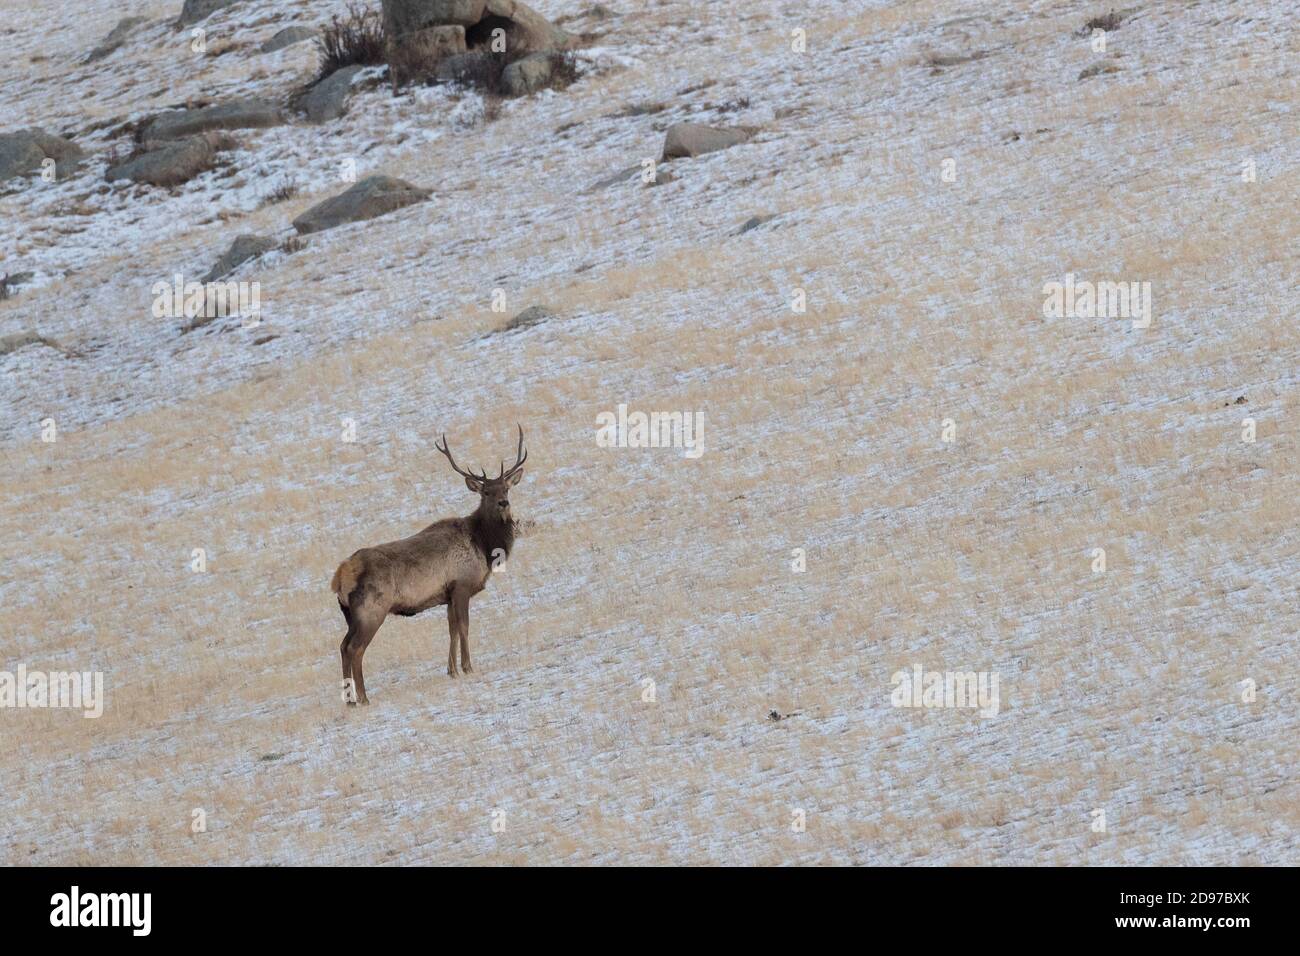 Cerf rouge (Cervus elaphus) dans la montagne, parc national de Hustai, Mongolie Banque D'Images